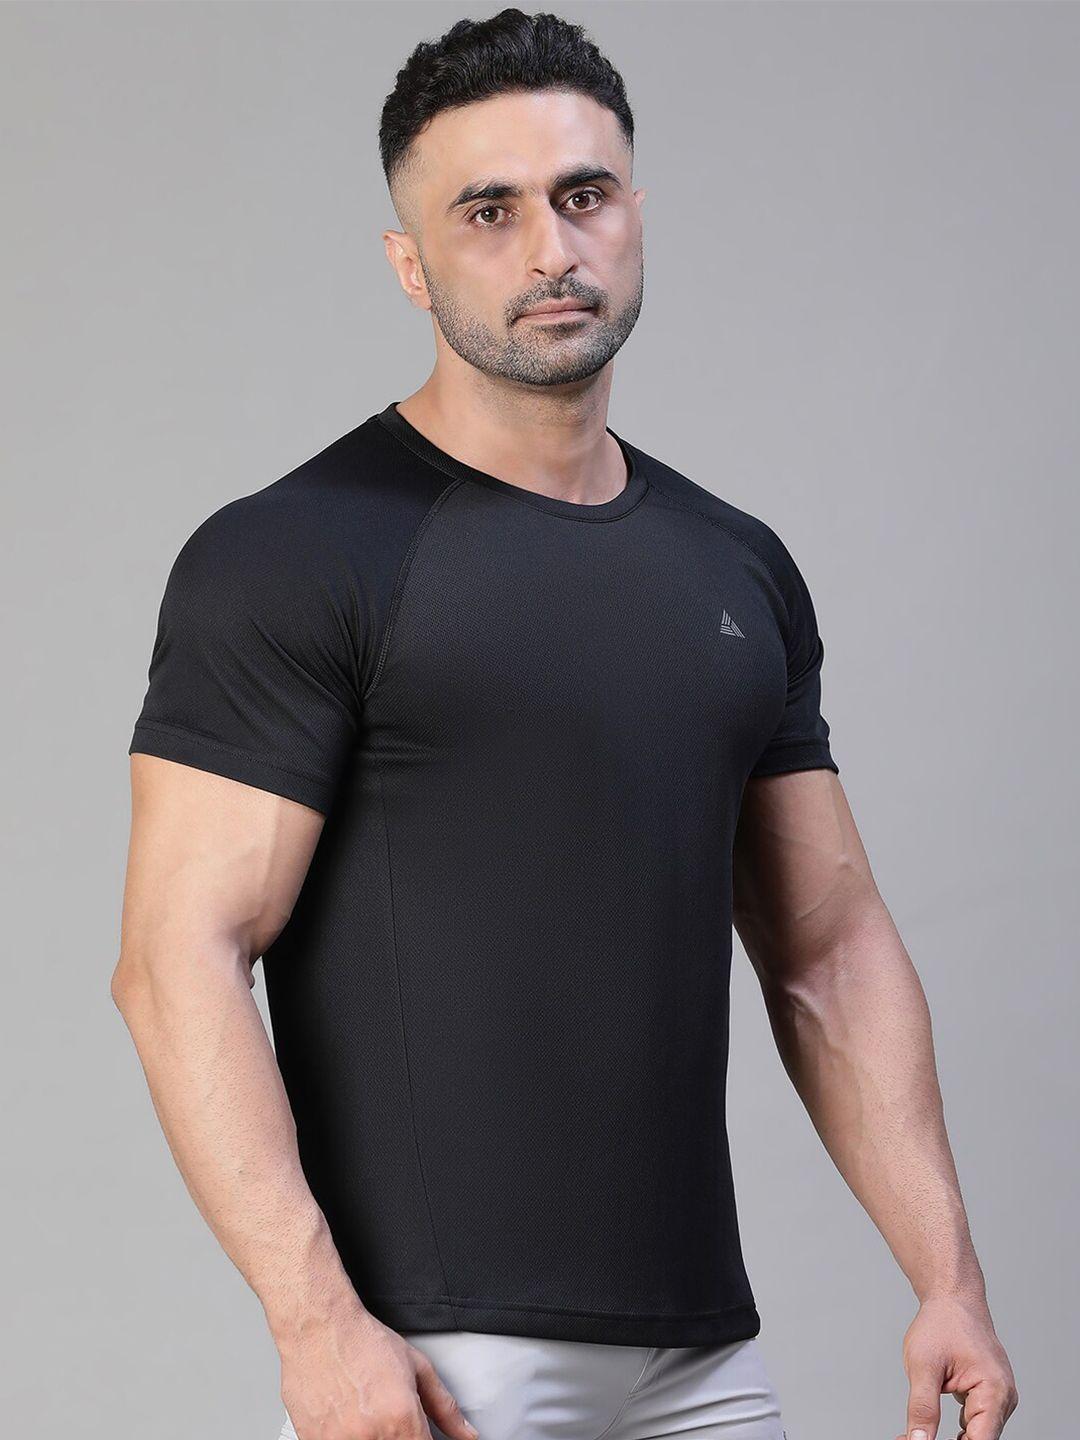 athlisis raglan sleeves dri-fit slim fit t-shirt